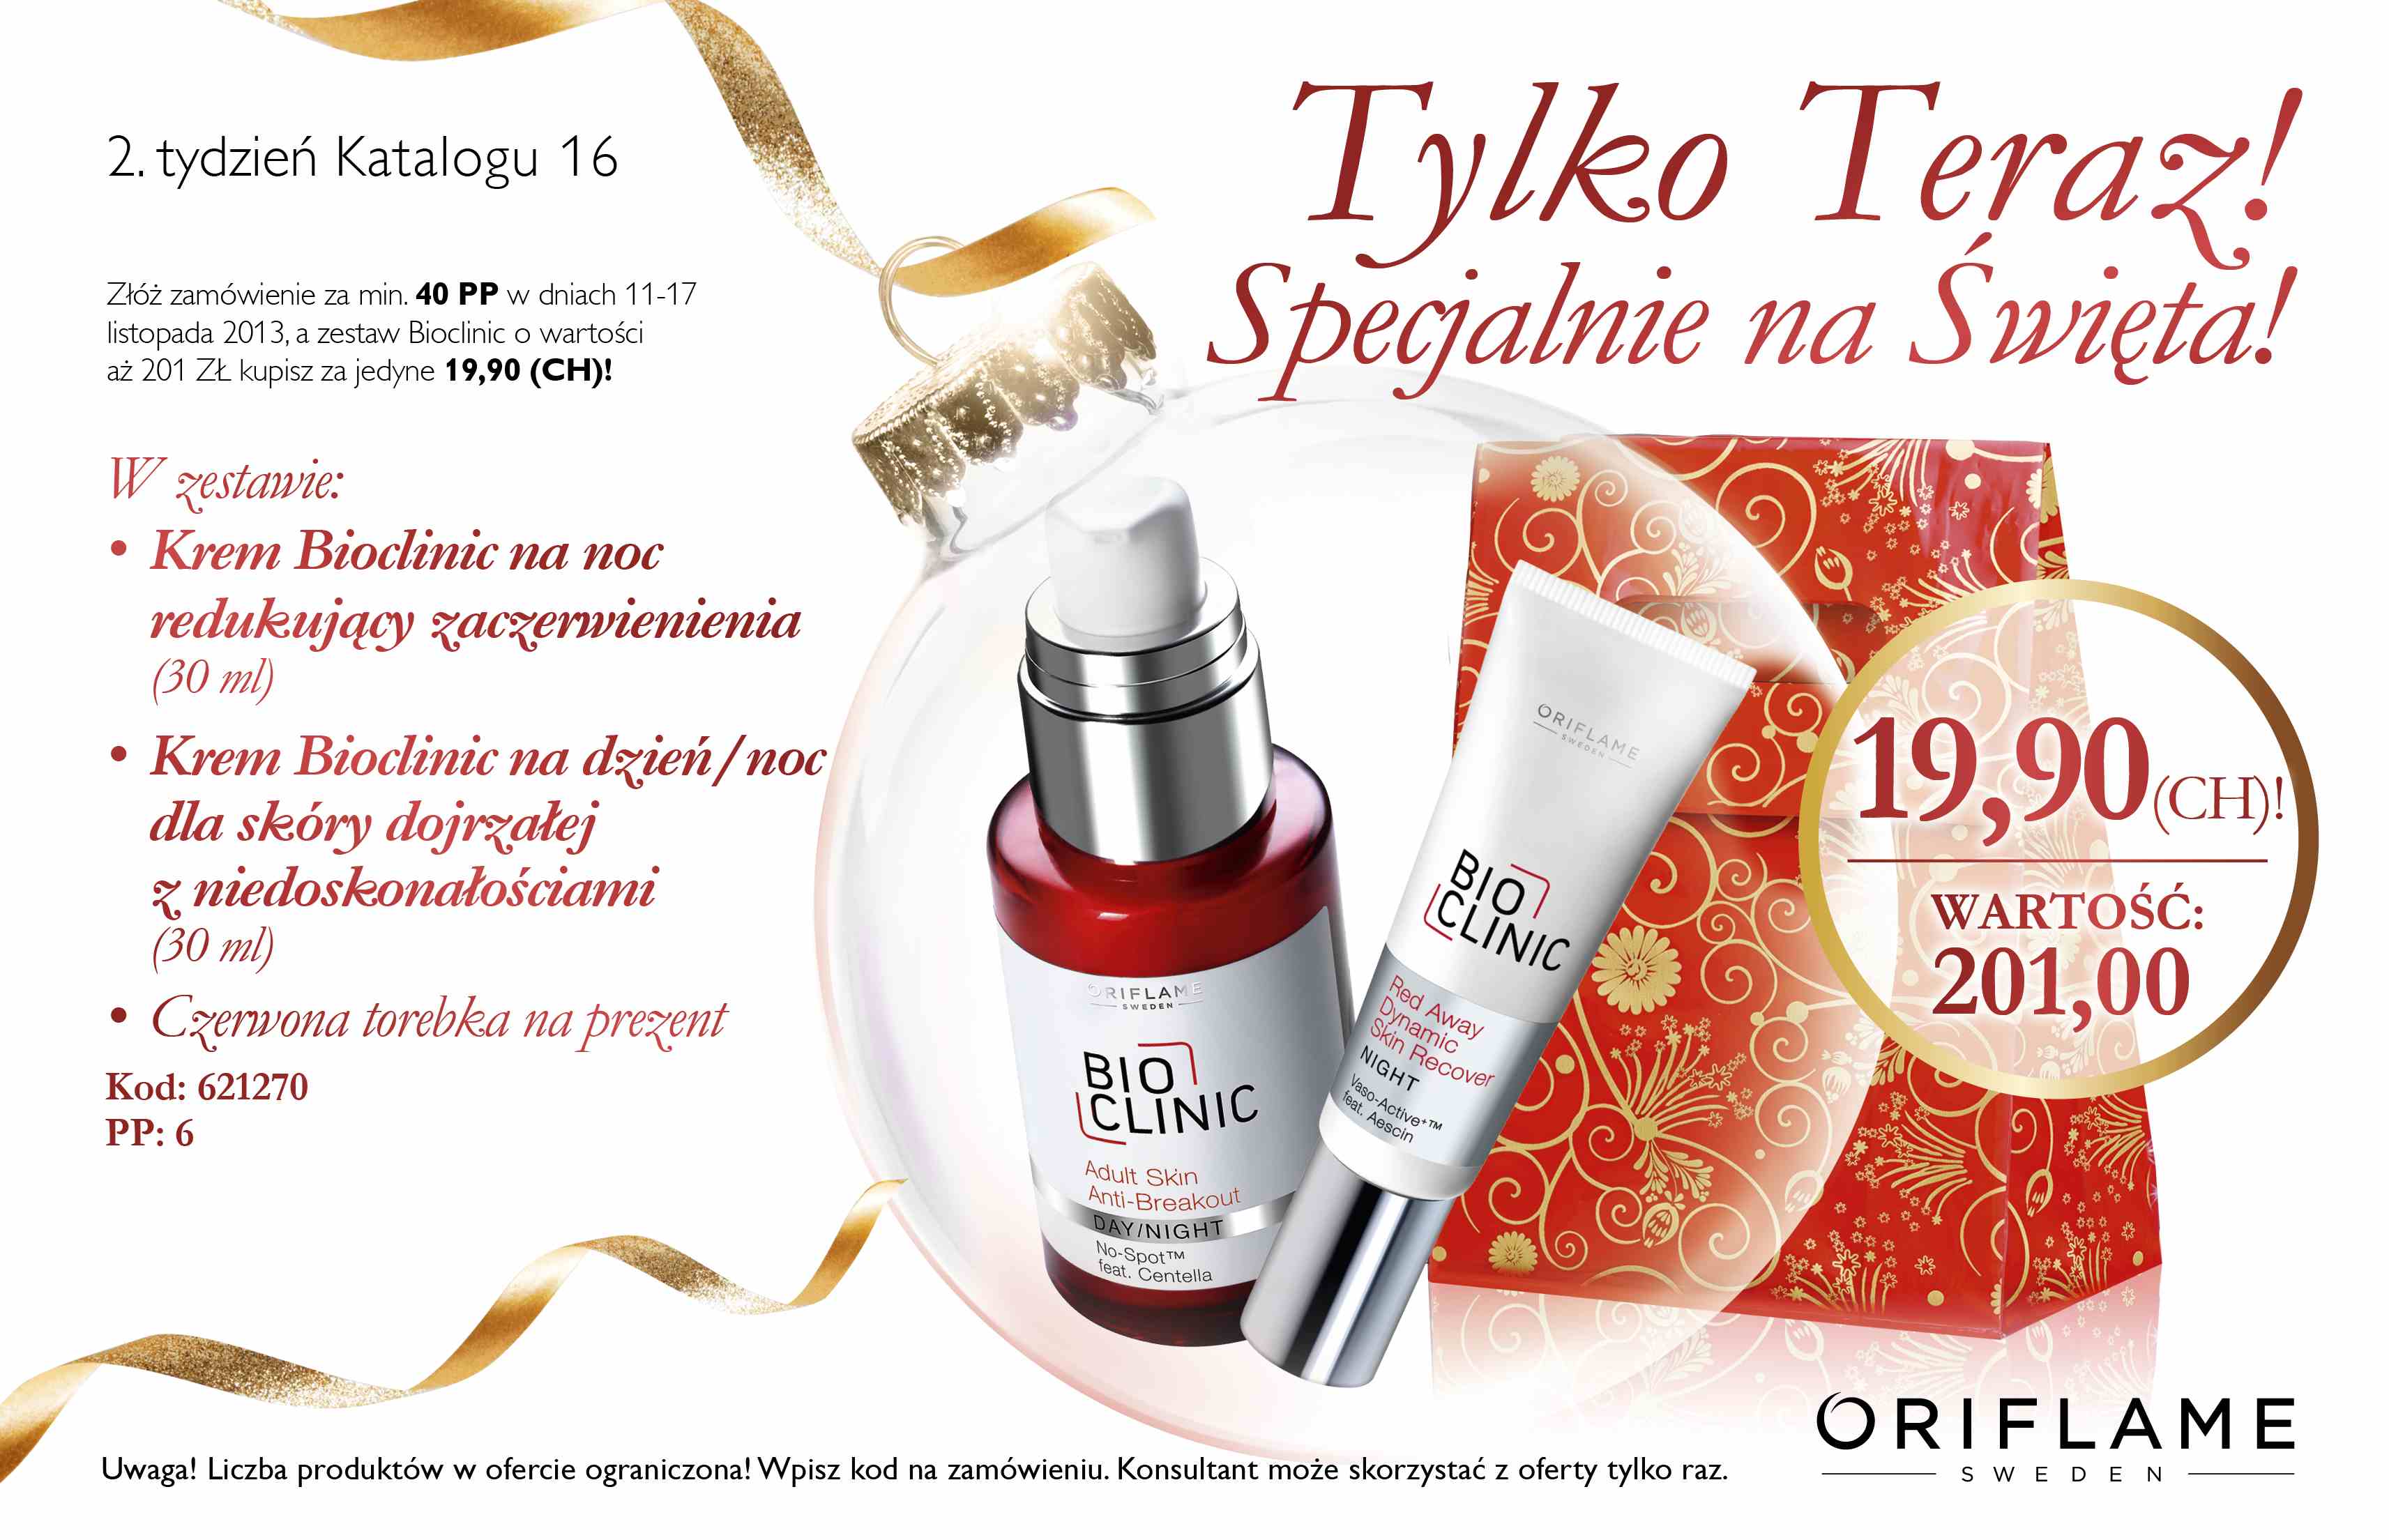 Katalog Oriflame 16 2013 oferta na 2 tydzień